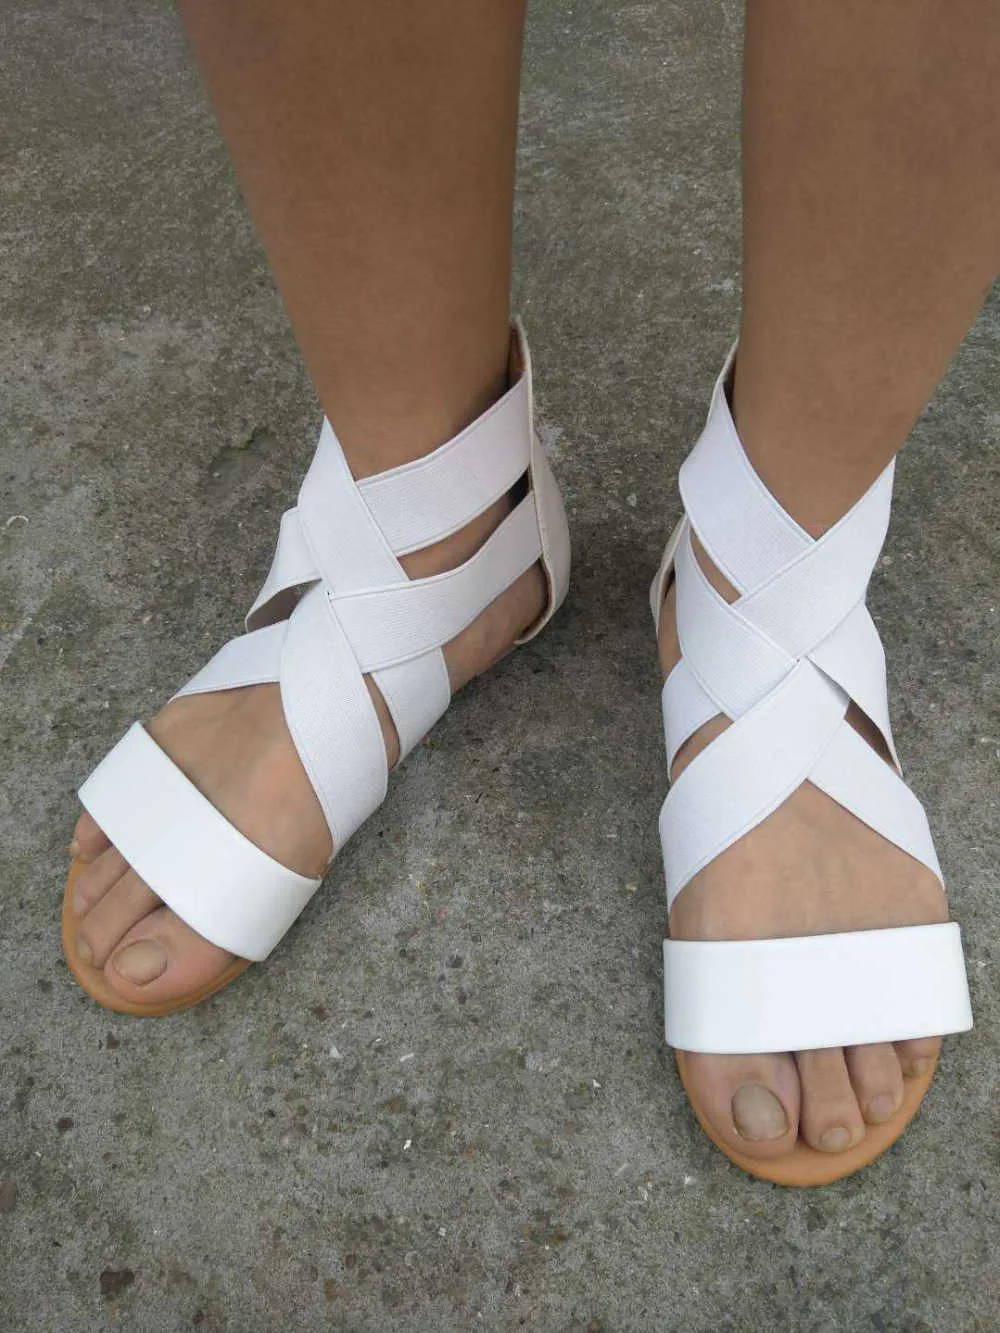 Imkkg sandálias de verão mulheres sapatos casuais feminina gladiador plana Roma zip feminina fundo suave sandalia m192 y0721